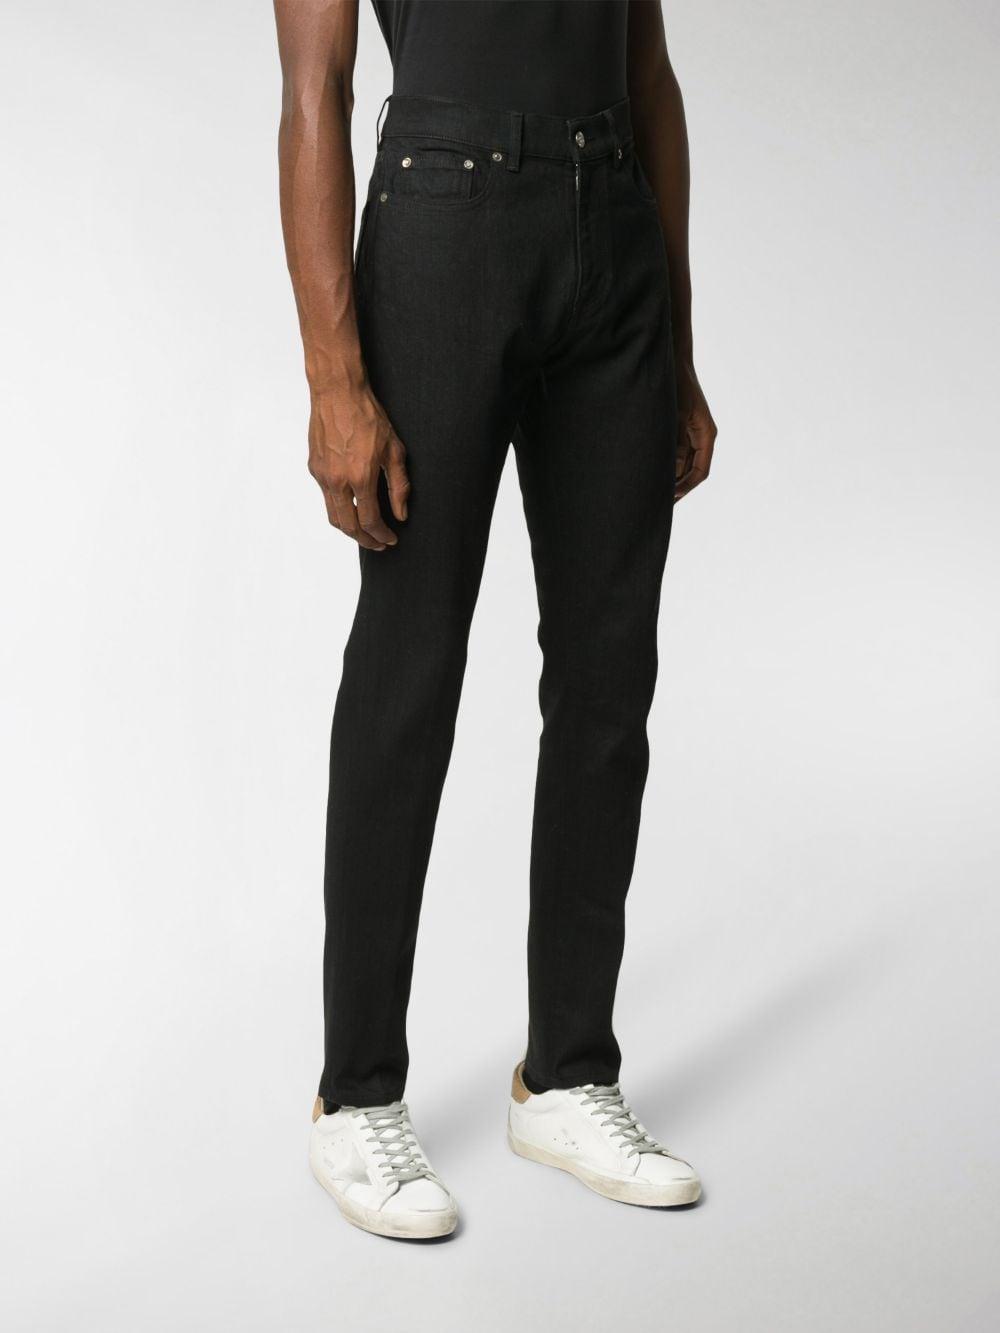 Golden Goose Deluxe Brand Denim Black Skinny Jeans for Men - Lyst